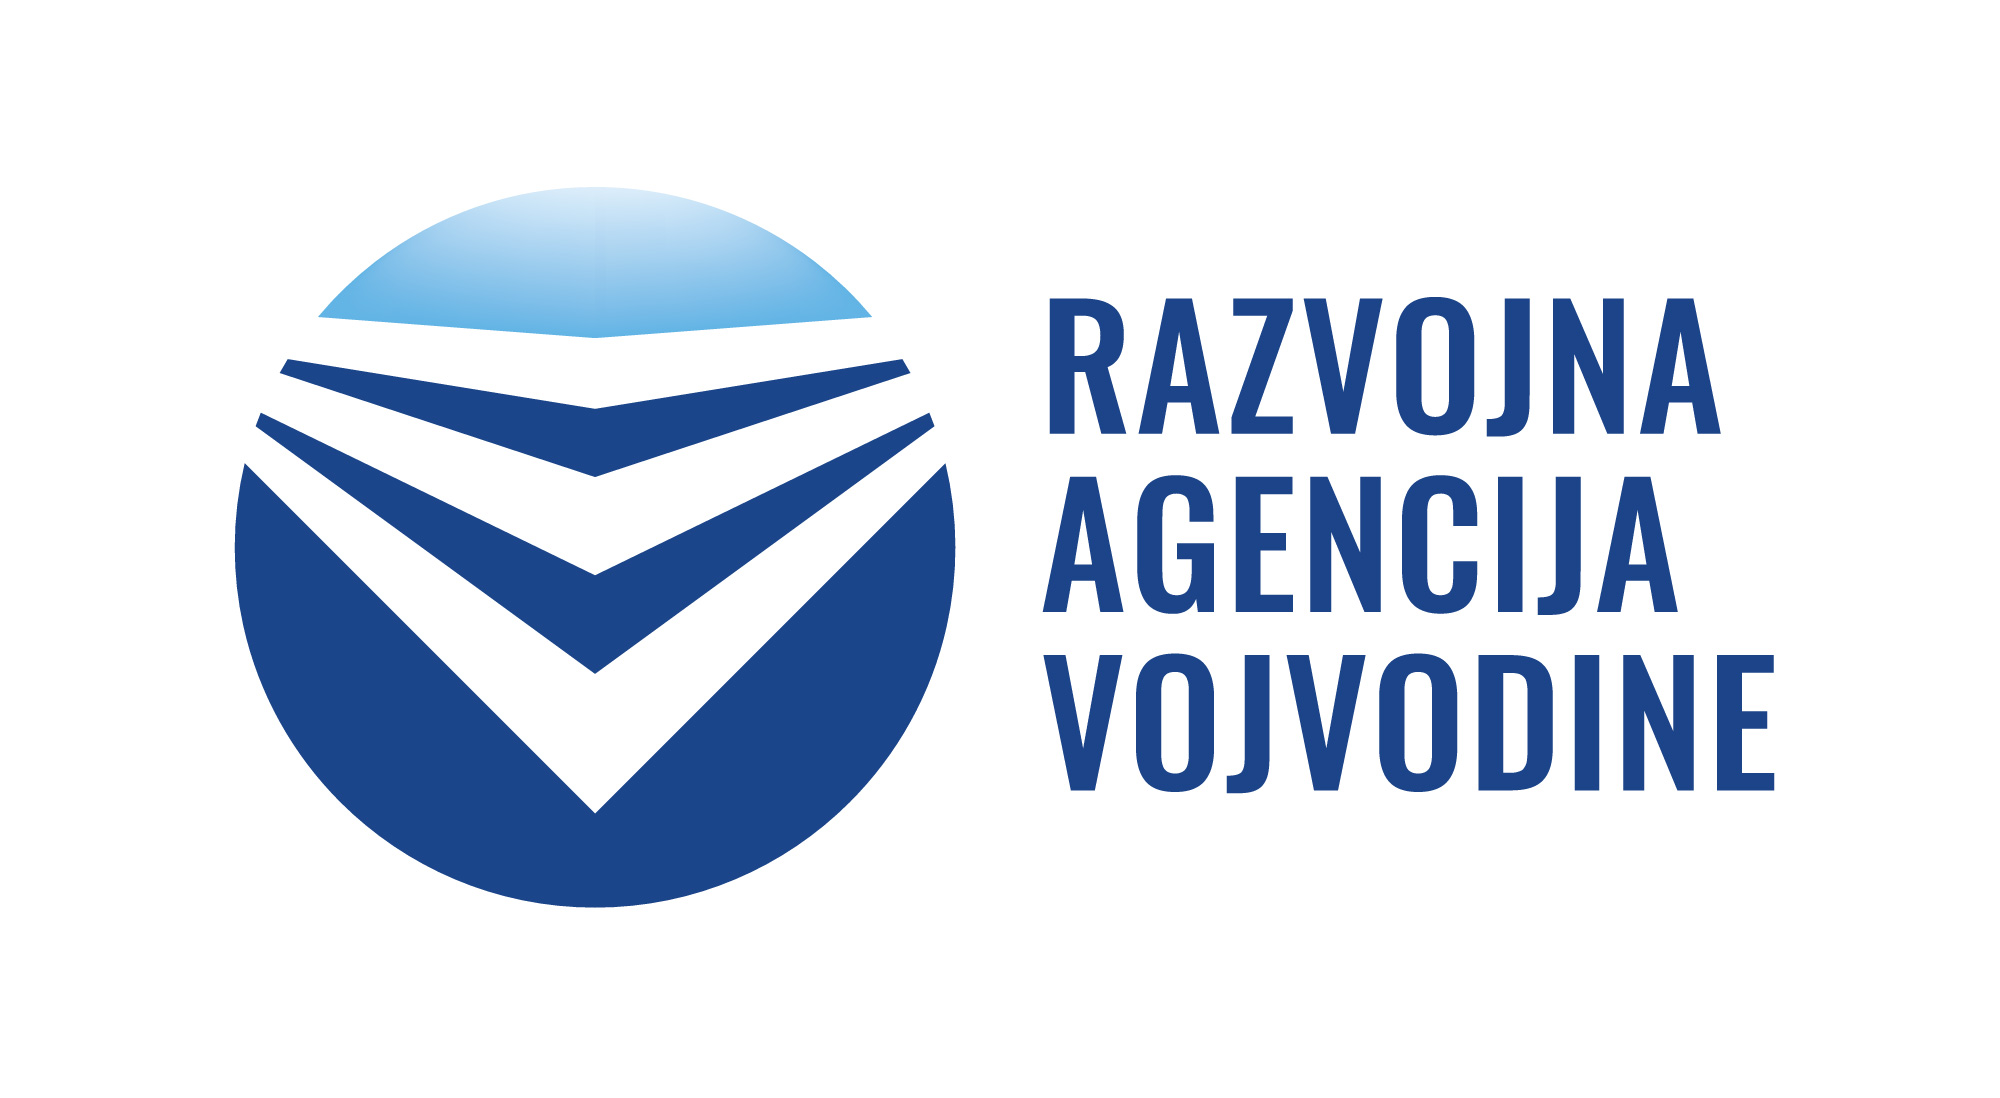 Развојна агенција Војводине